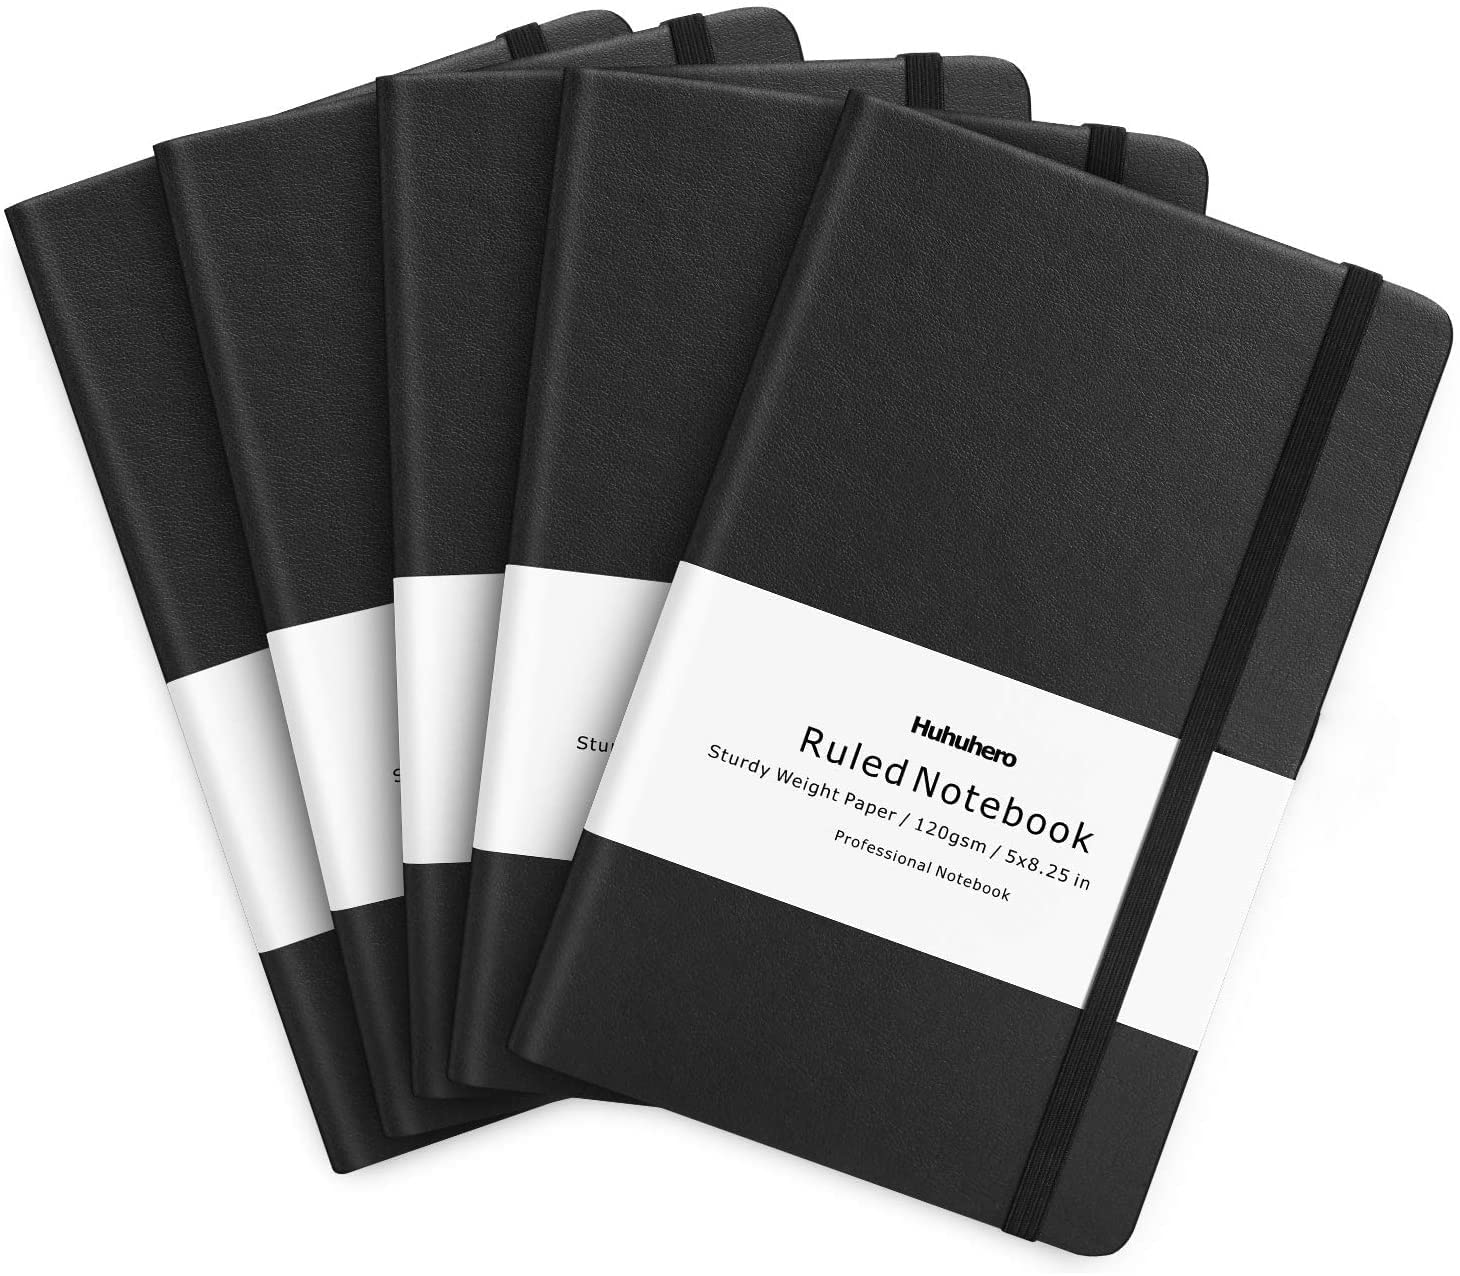 Huhuhero - Cuaderno, tapa dura clásica a rayas, papel grueso de 120 g/m² de primera calidad con bolsillo interior fino, piel sintética negra para diario de escritura, notas y agenda, 13 x 21 cm (5, negro